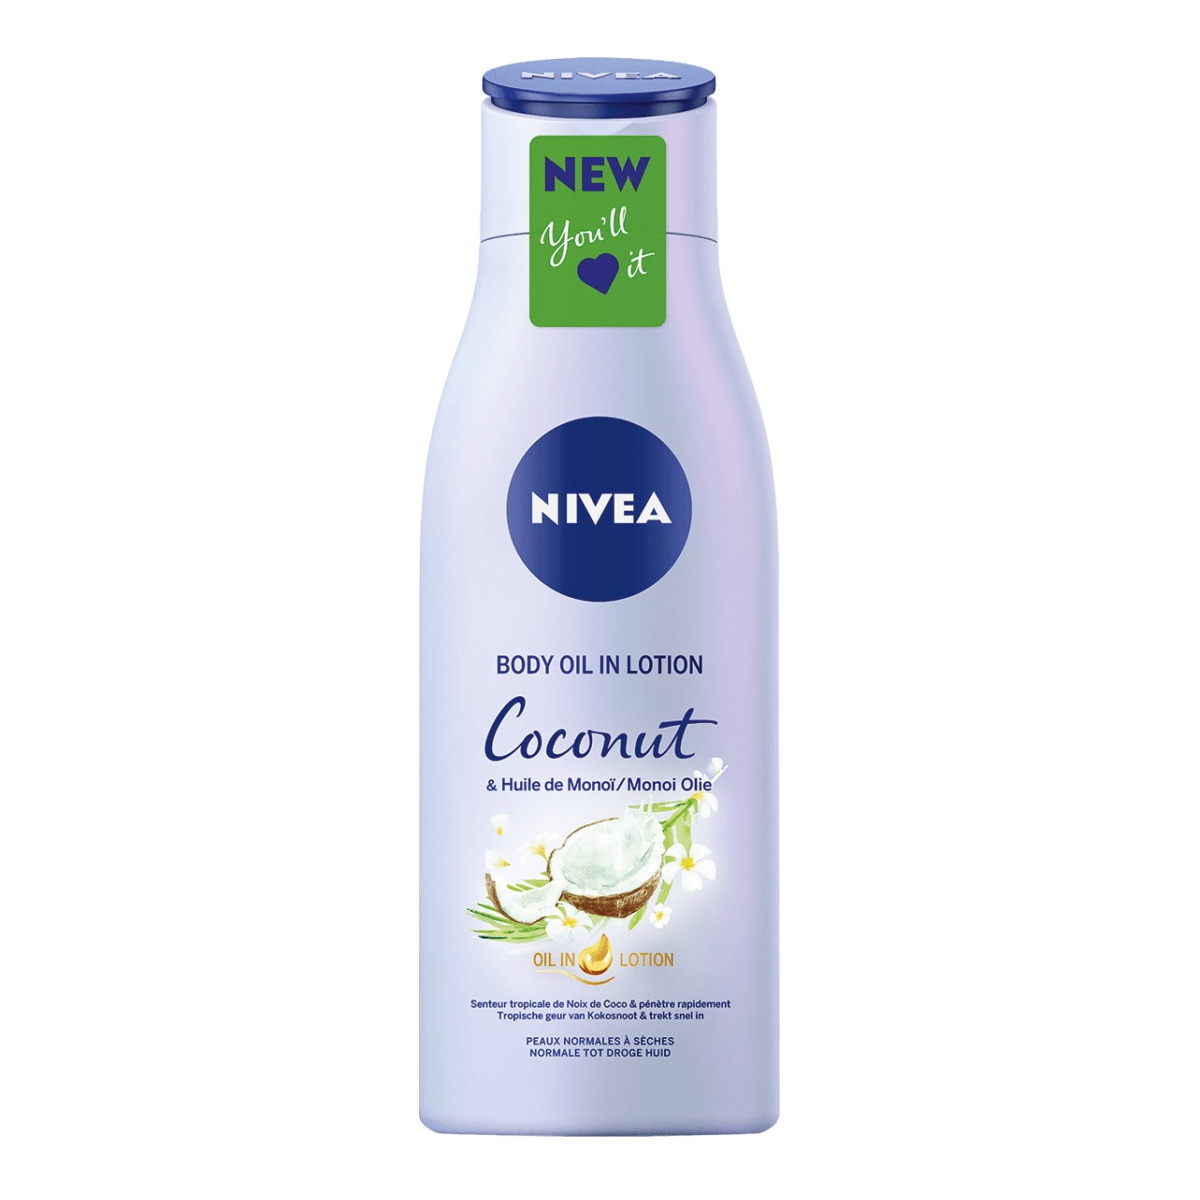 لوسیون بدن نارگیل~Coconut Body Oil In Lotion~NIVEA